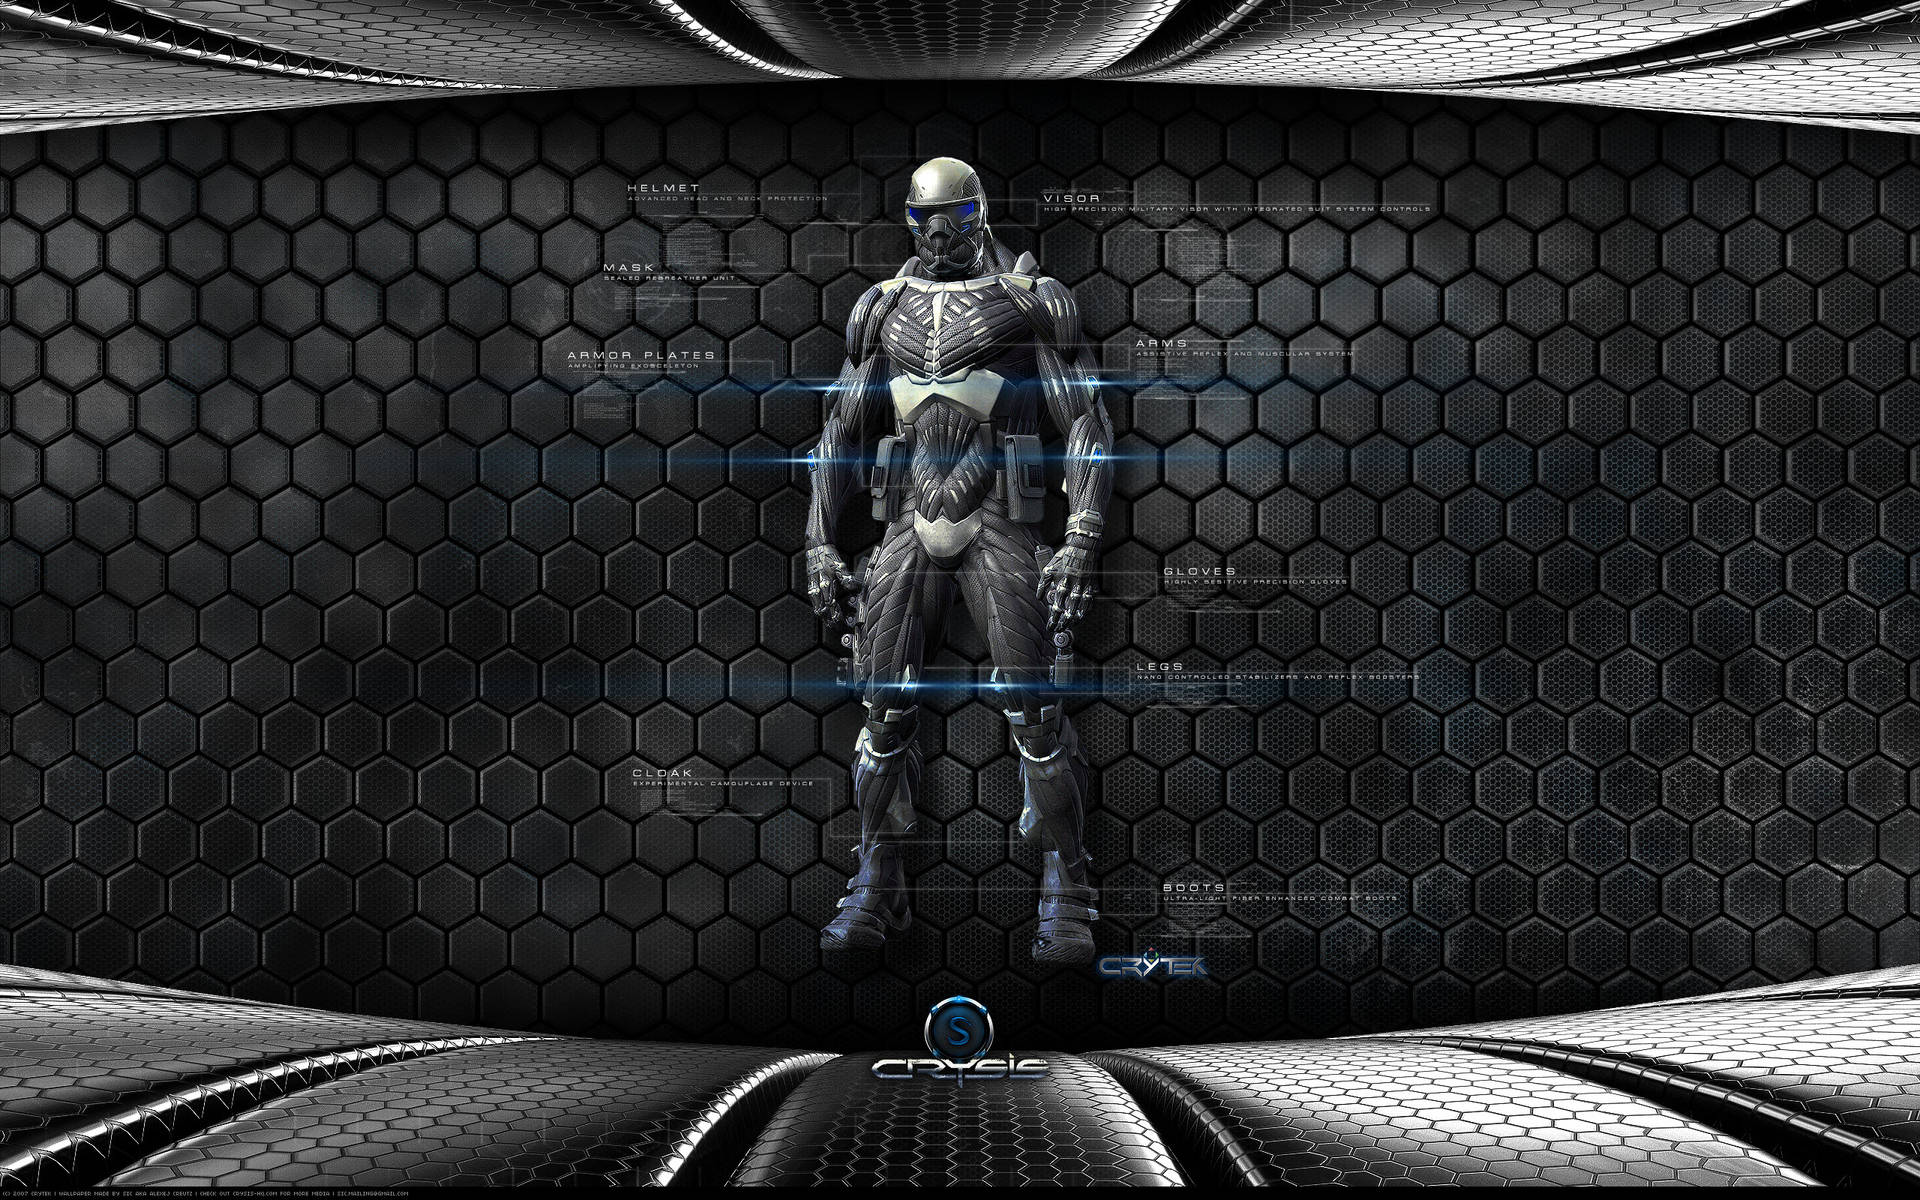 Crysis3 Nanosuit Bildschirm 4k Wallpaper